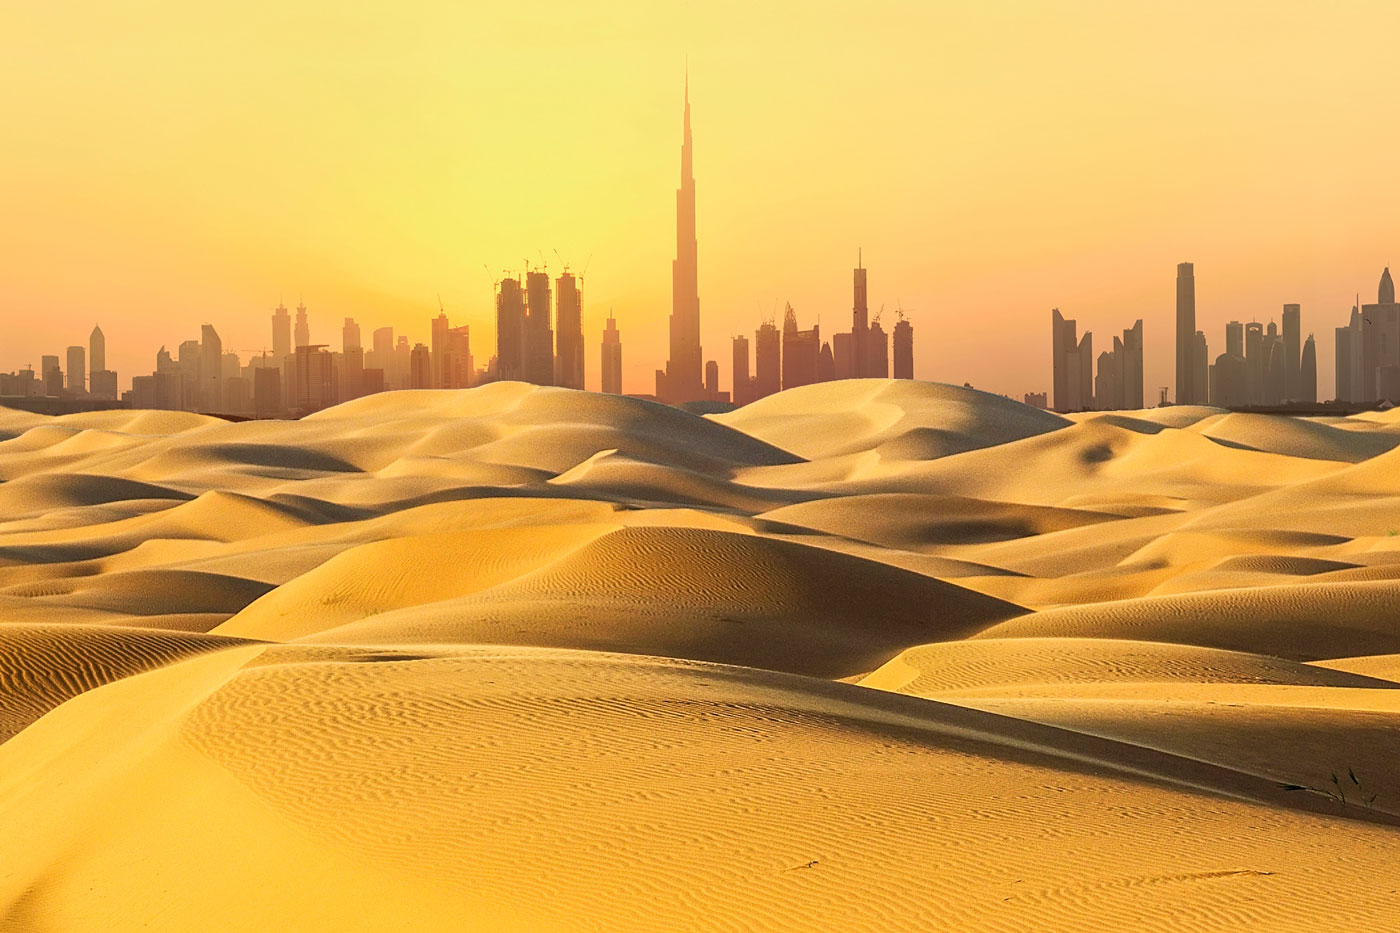 Paisaje urbano de Dubai en el desierto al atardecer.